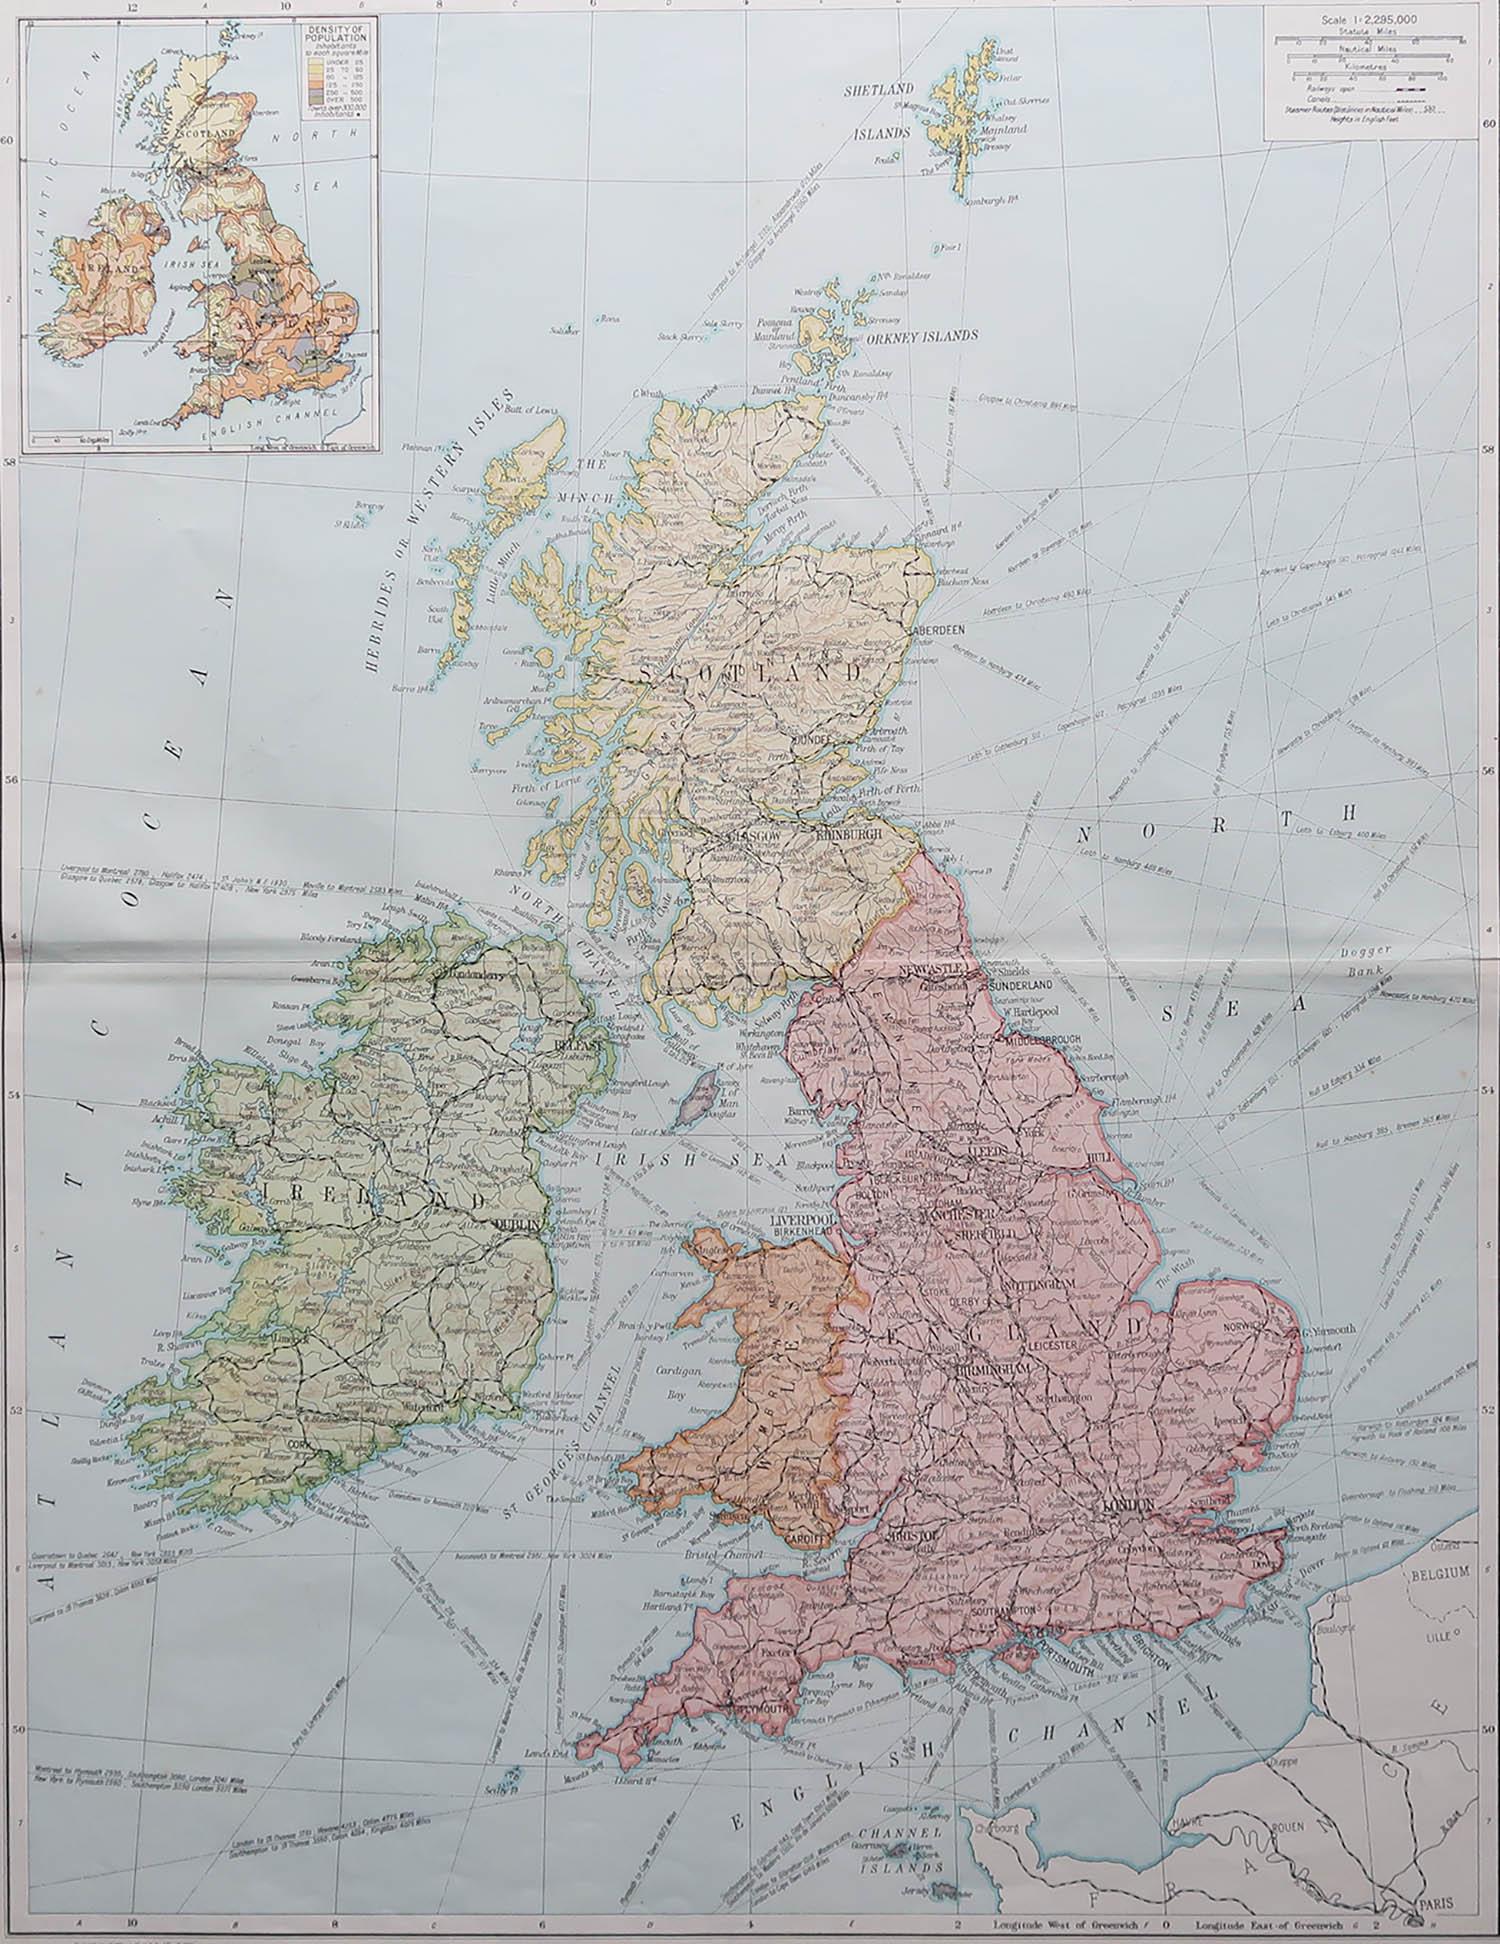 Große Karte des Vereinigten Königreichs

Originalfarbe.

Herausgegeben von Alexander Gross

Ungerahmt.










